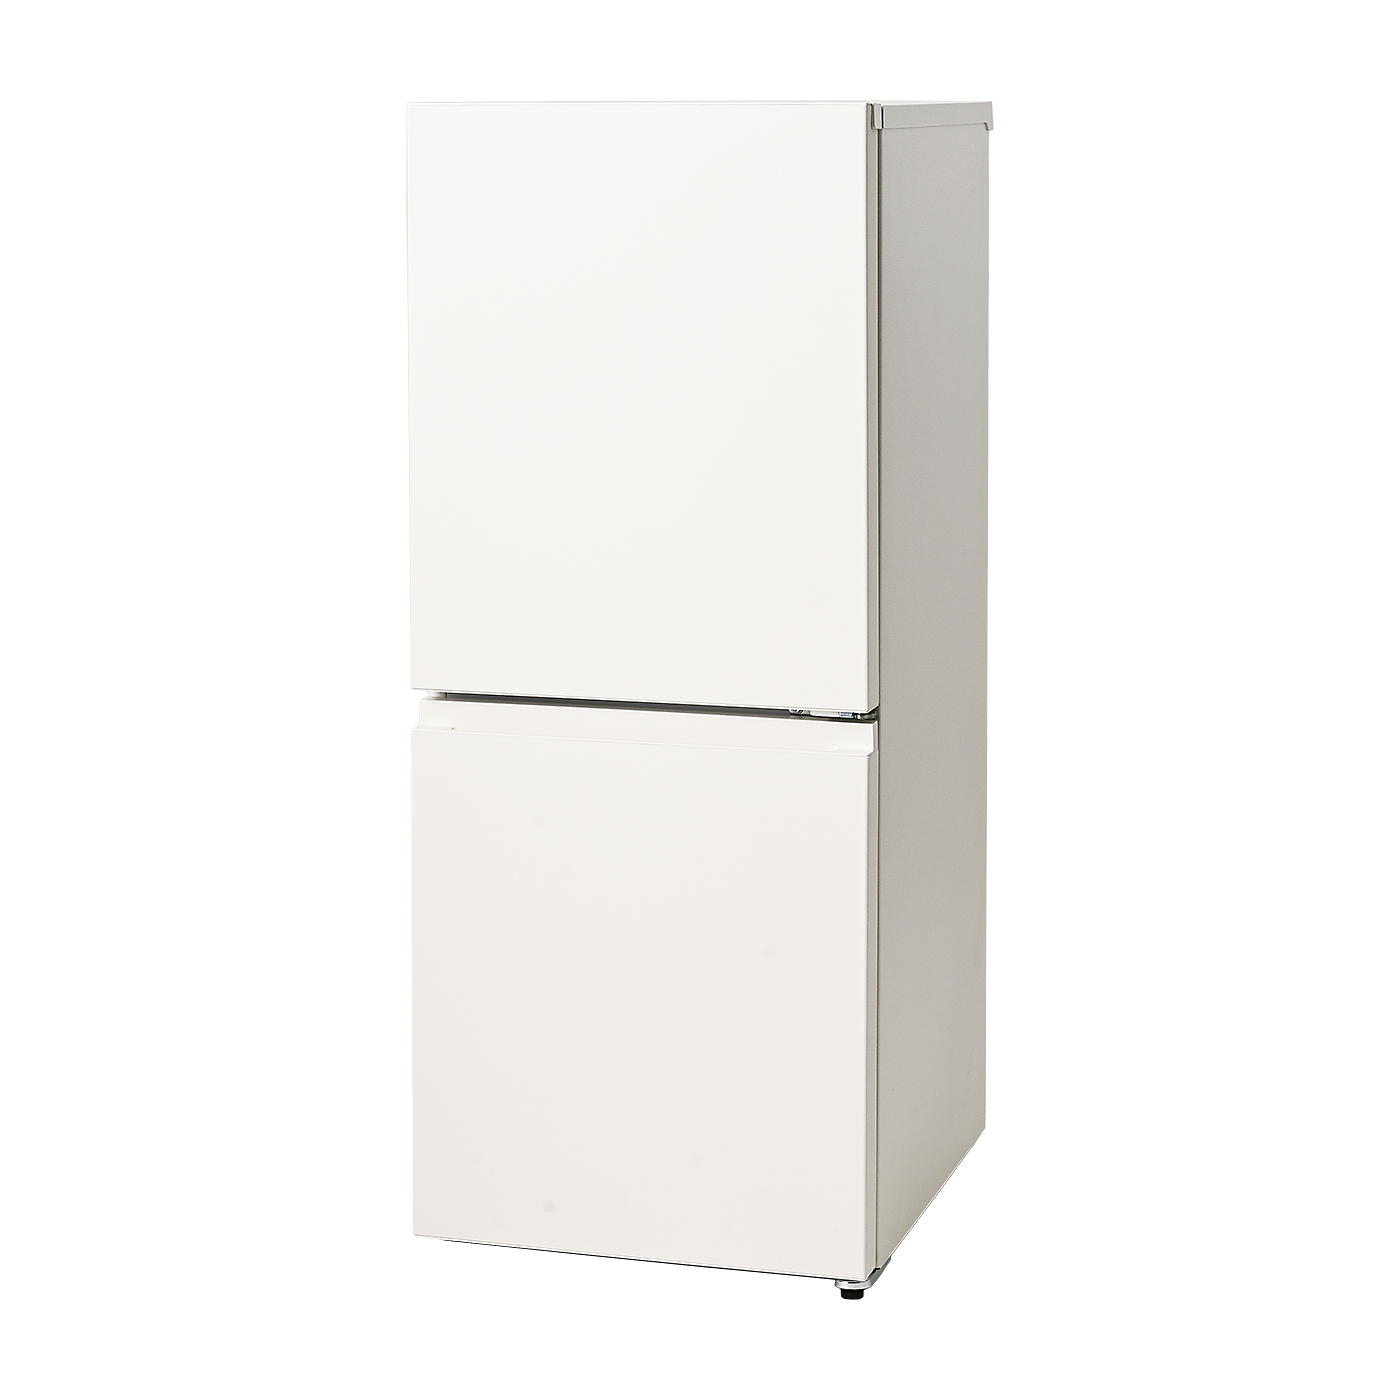 買い得人気のPanasonic!! 5ドア 冷凍冷蔵庫 2021年 NR-E417EX-W 406L 格安自社配送可!!(要確認) 400リットル～